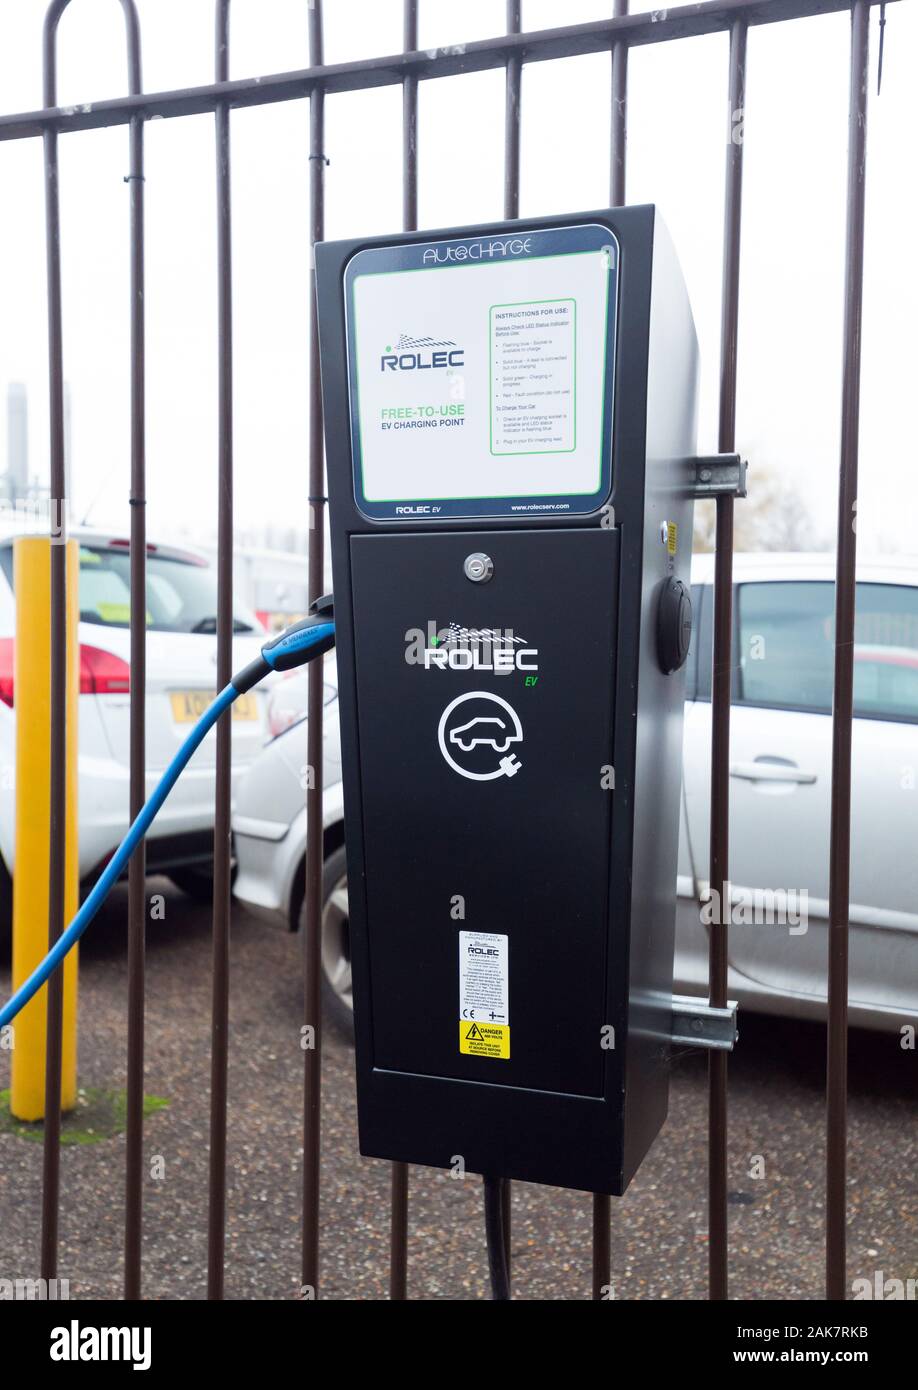 Point de recharge électrique Rolec au Royaume-Uni Banque D'Images